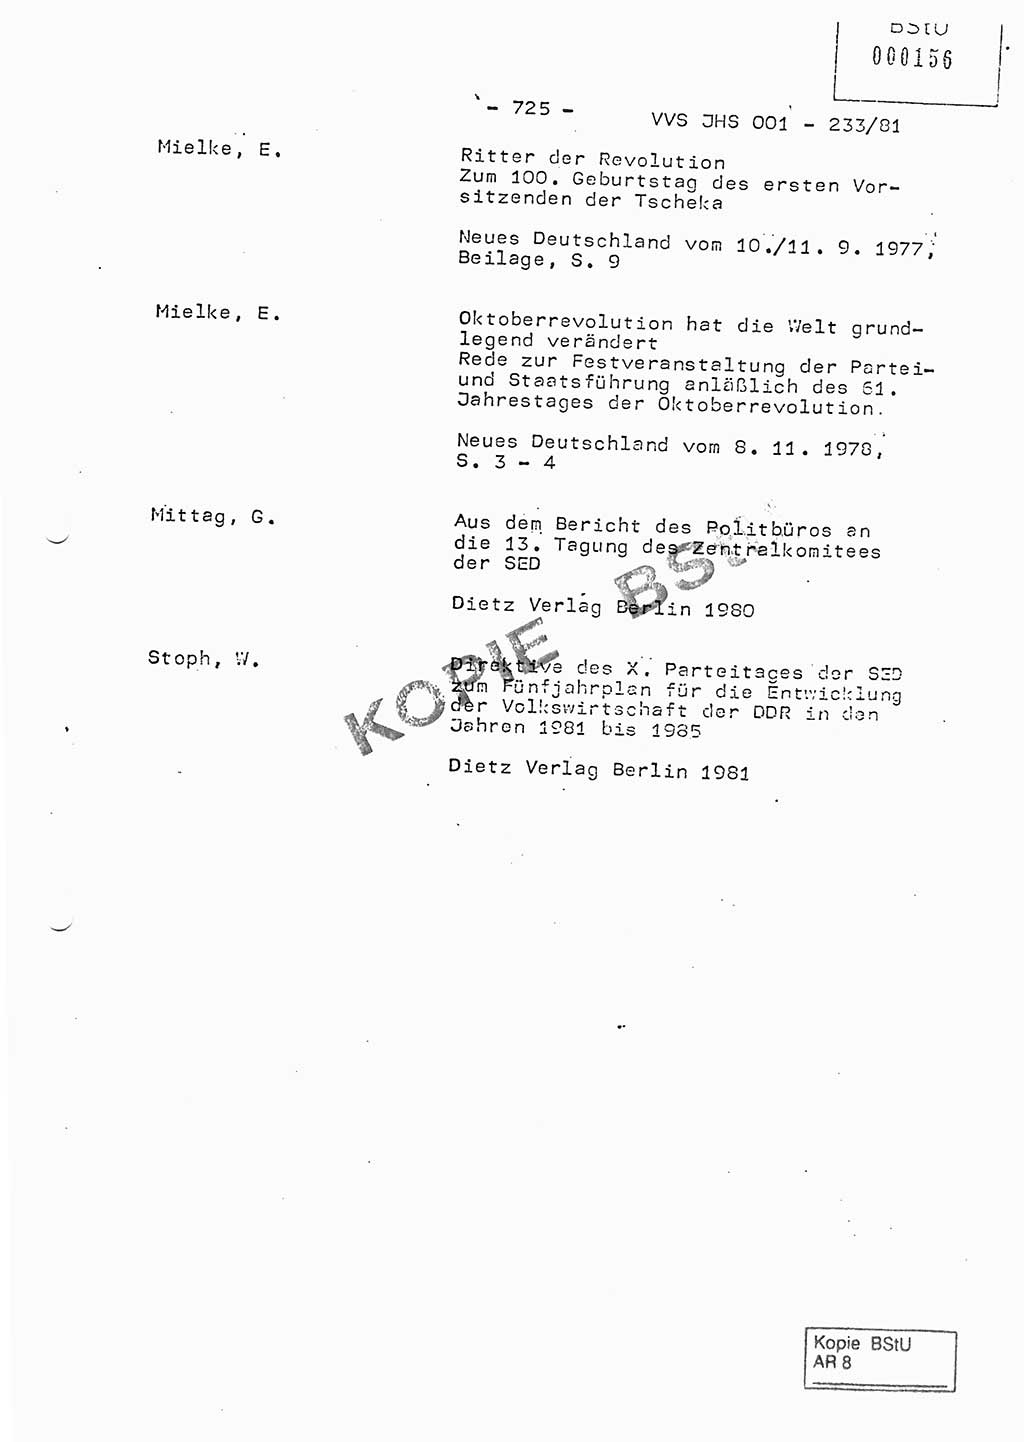 Dissertation Oberstleutnant Horst Zank (JHS), Oberstleutnant Dr. Karl-Heinz Knoblauch (JHS), Oberstleutnant Gustav-Adolf Kowalewski (HA Ⅸ), Oberstleutnant Wolfgang Plötner (HA Ⅸ), Ministerium für Staatssicherheit (MfS) [Deutsche Demokratische Republik (DDR)], Juristische Hochschule (JHS), Vertrauliche Verschlußsache (VVS) o001-233/81, Potsdam 1981, Blatt 725 (Diss. MfS DDR JHS VVS o001-233/81 1981, Bl. 725)